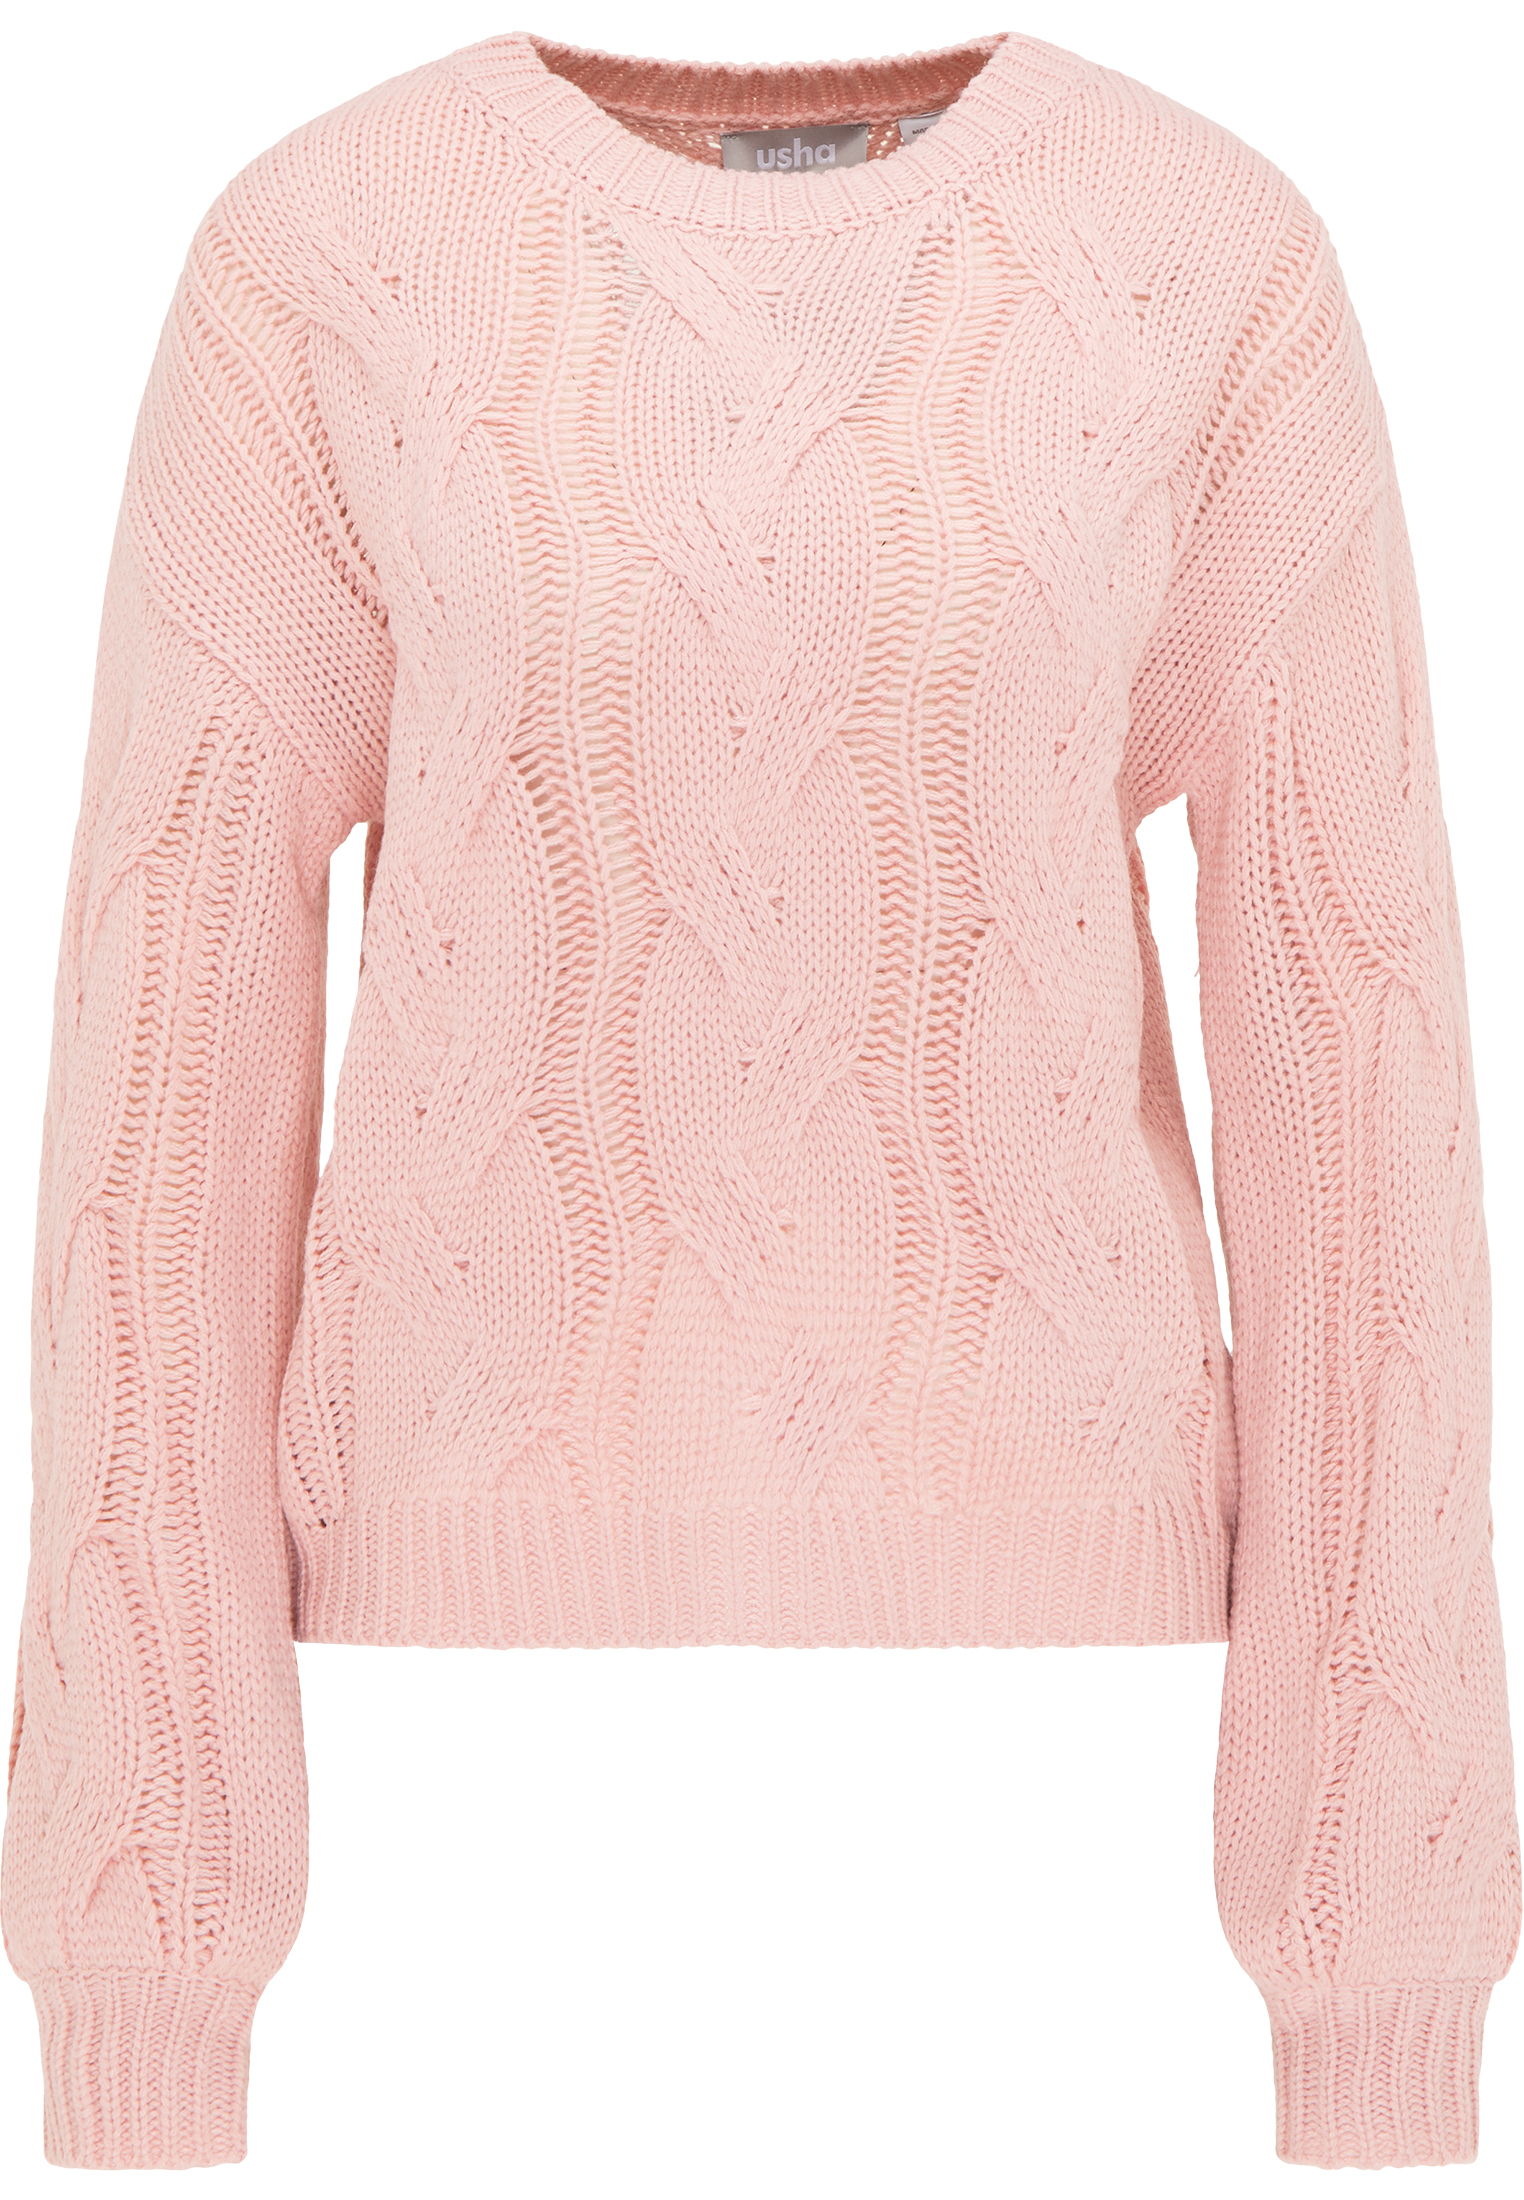 Odzież Kobiety Usha Sweter w kolorze Brzoskwiniowym 